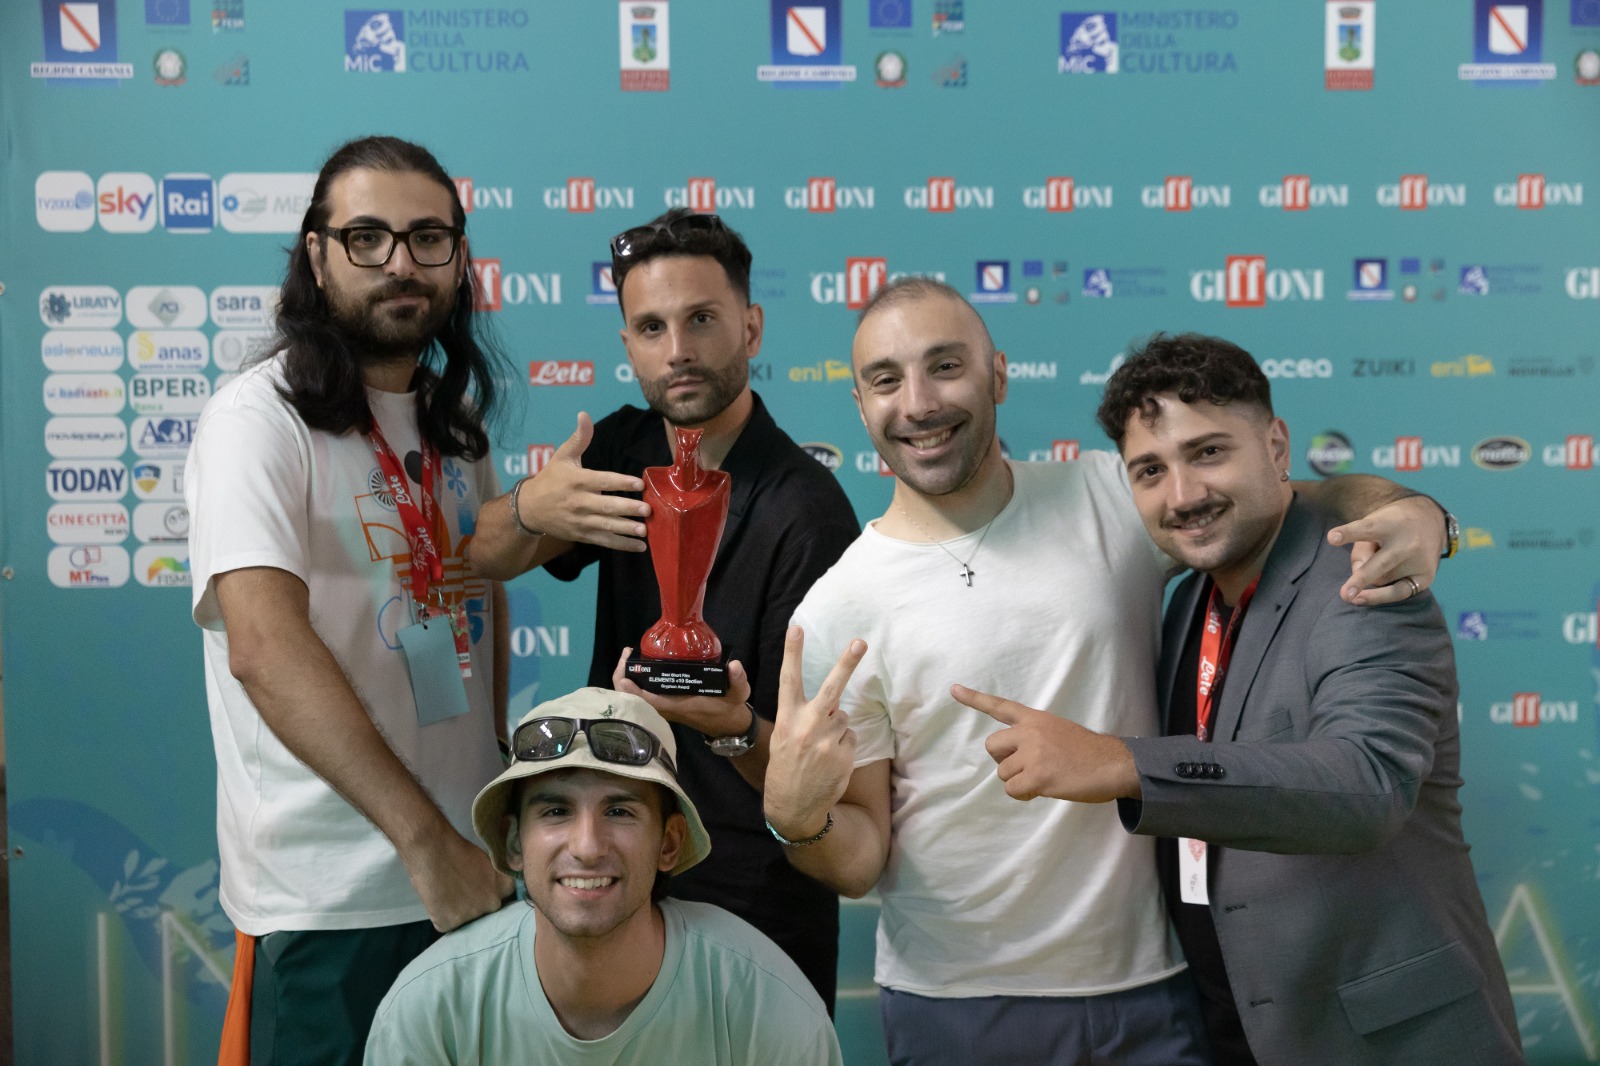 GIFFONI 53, vince “Loop” storia contro il bullismo all'ombra del Vesuvio